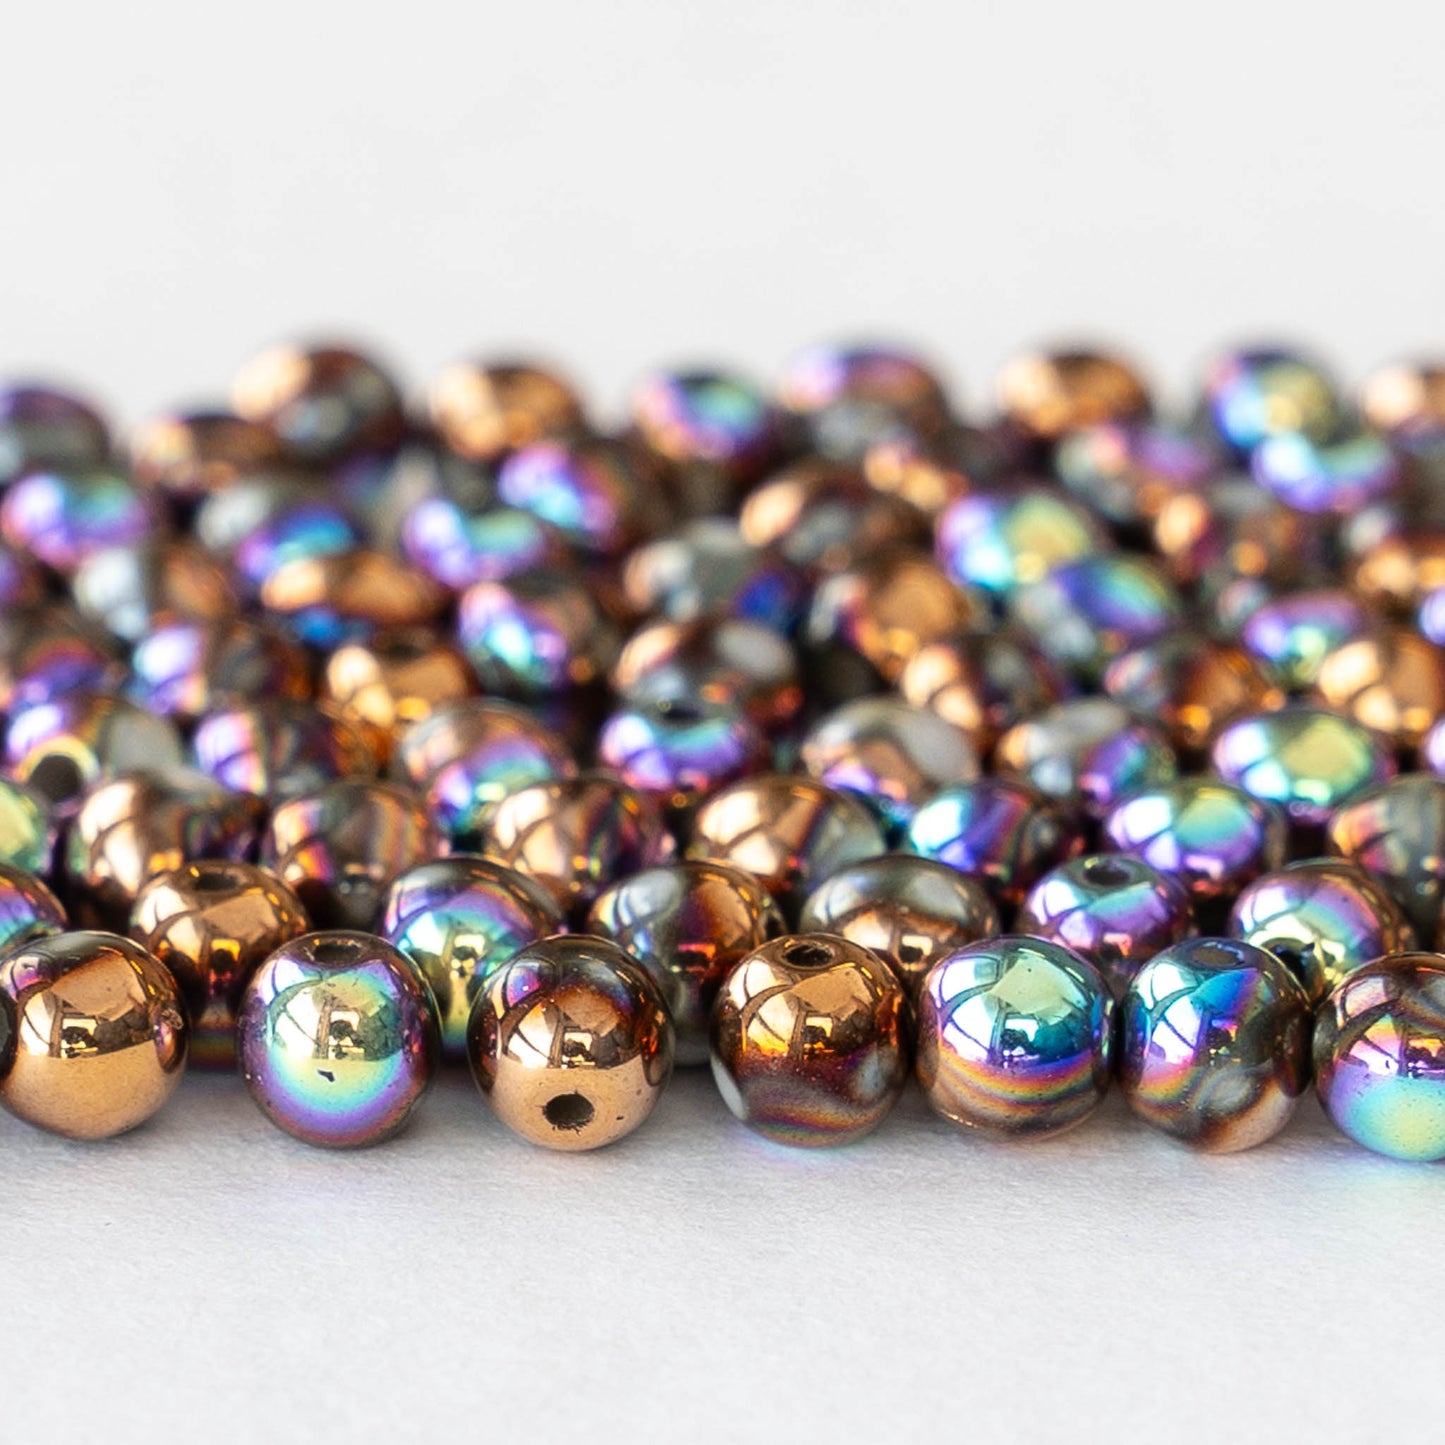 4mm Round Glass Beads - Metallic Bronze AB -  120 Beads